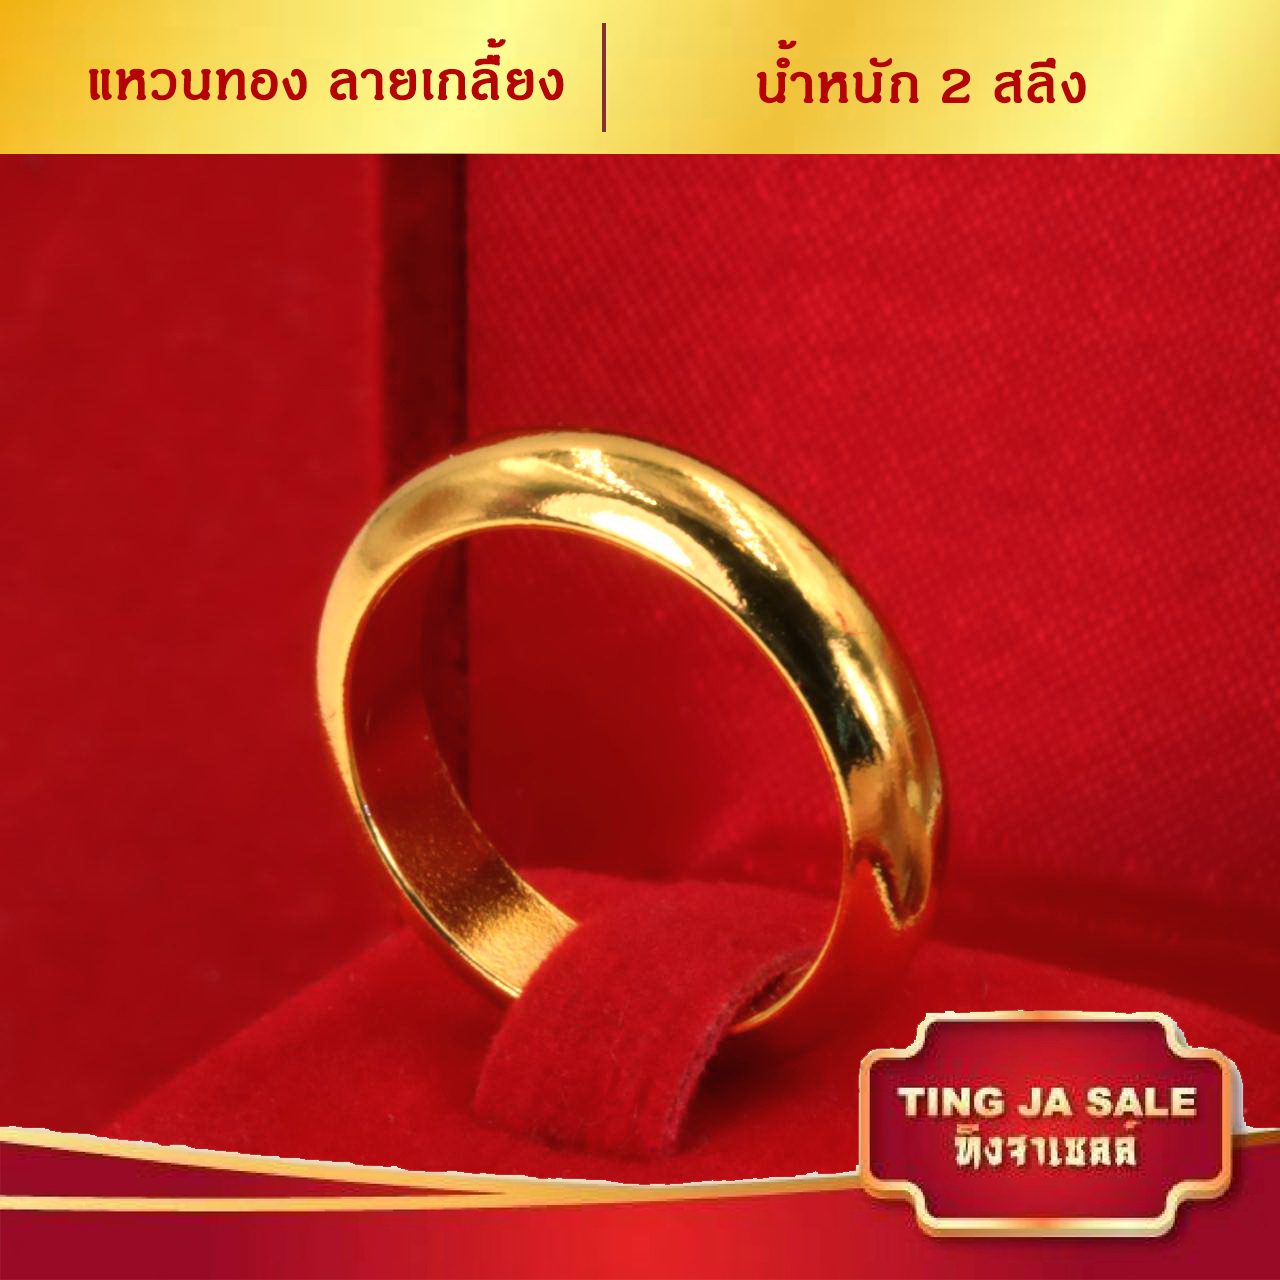 ลดสูงสุด!! วันเดียวเท่านั้น แหวนทอง แหวนทองเกลี้ยง น้ำหนัก 2สลึง ชุบทอง 100% สินค้าขายดี พร้อมส่ง